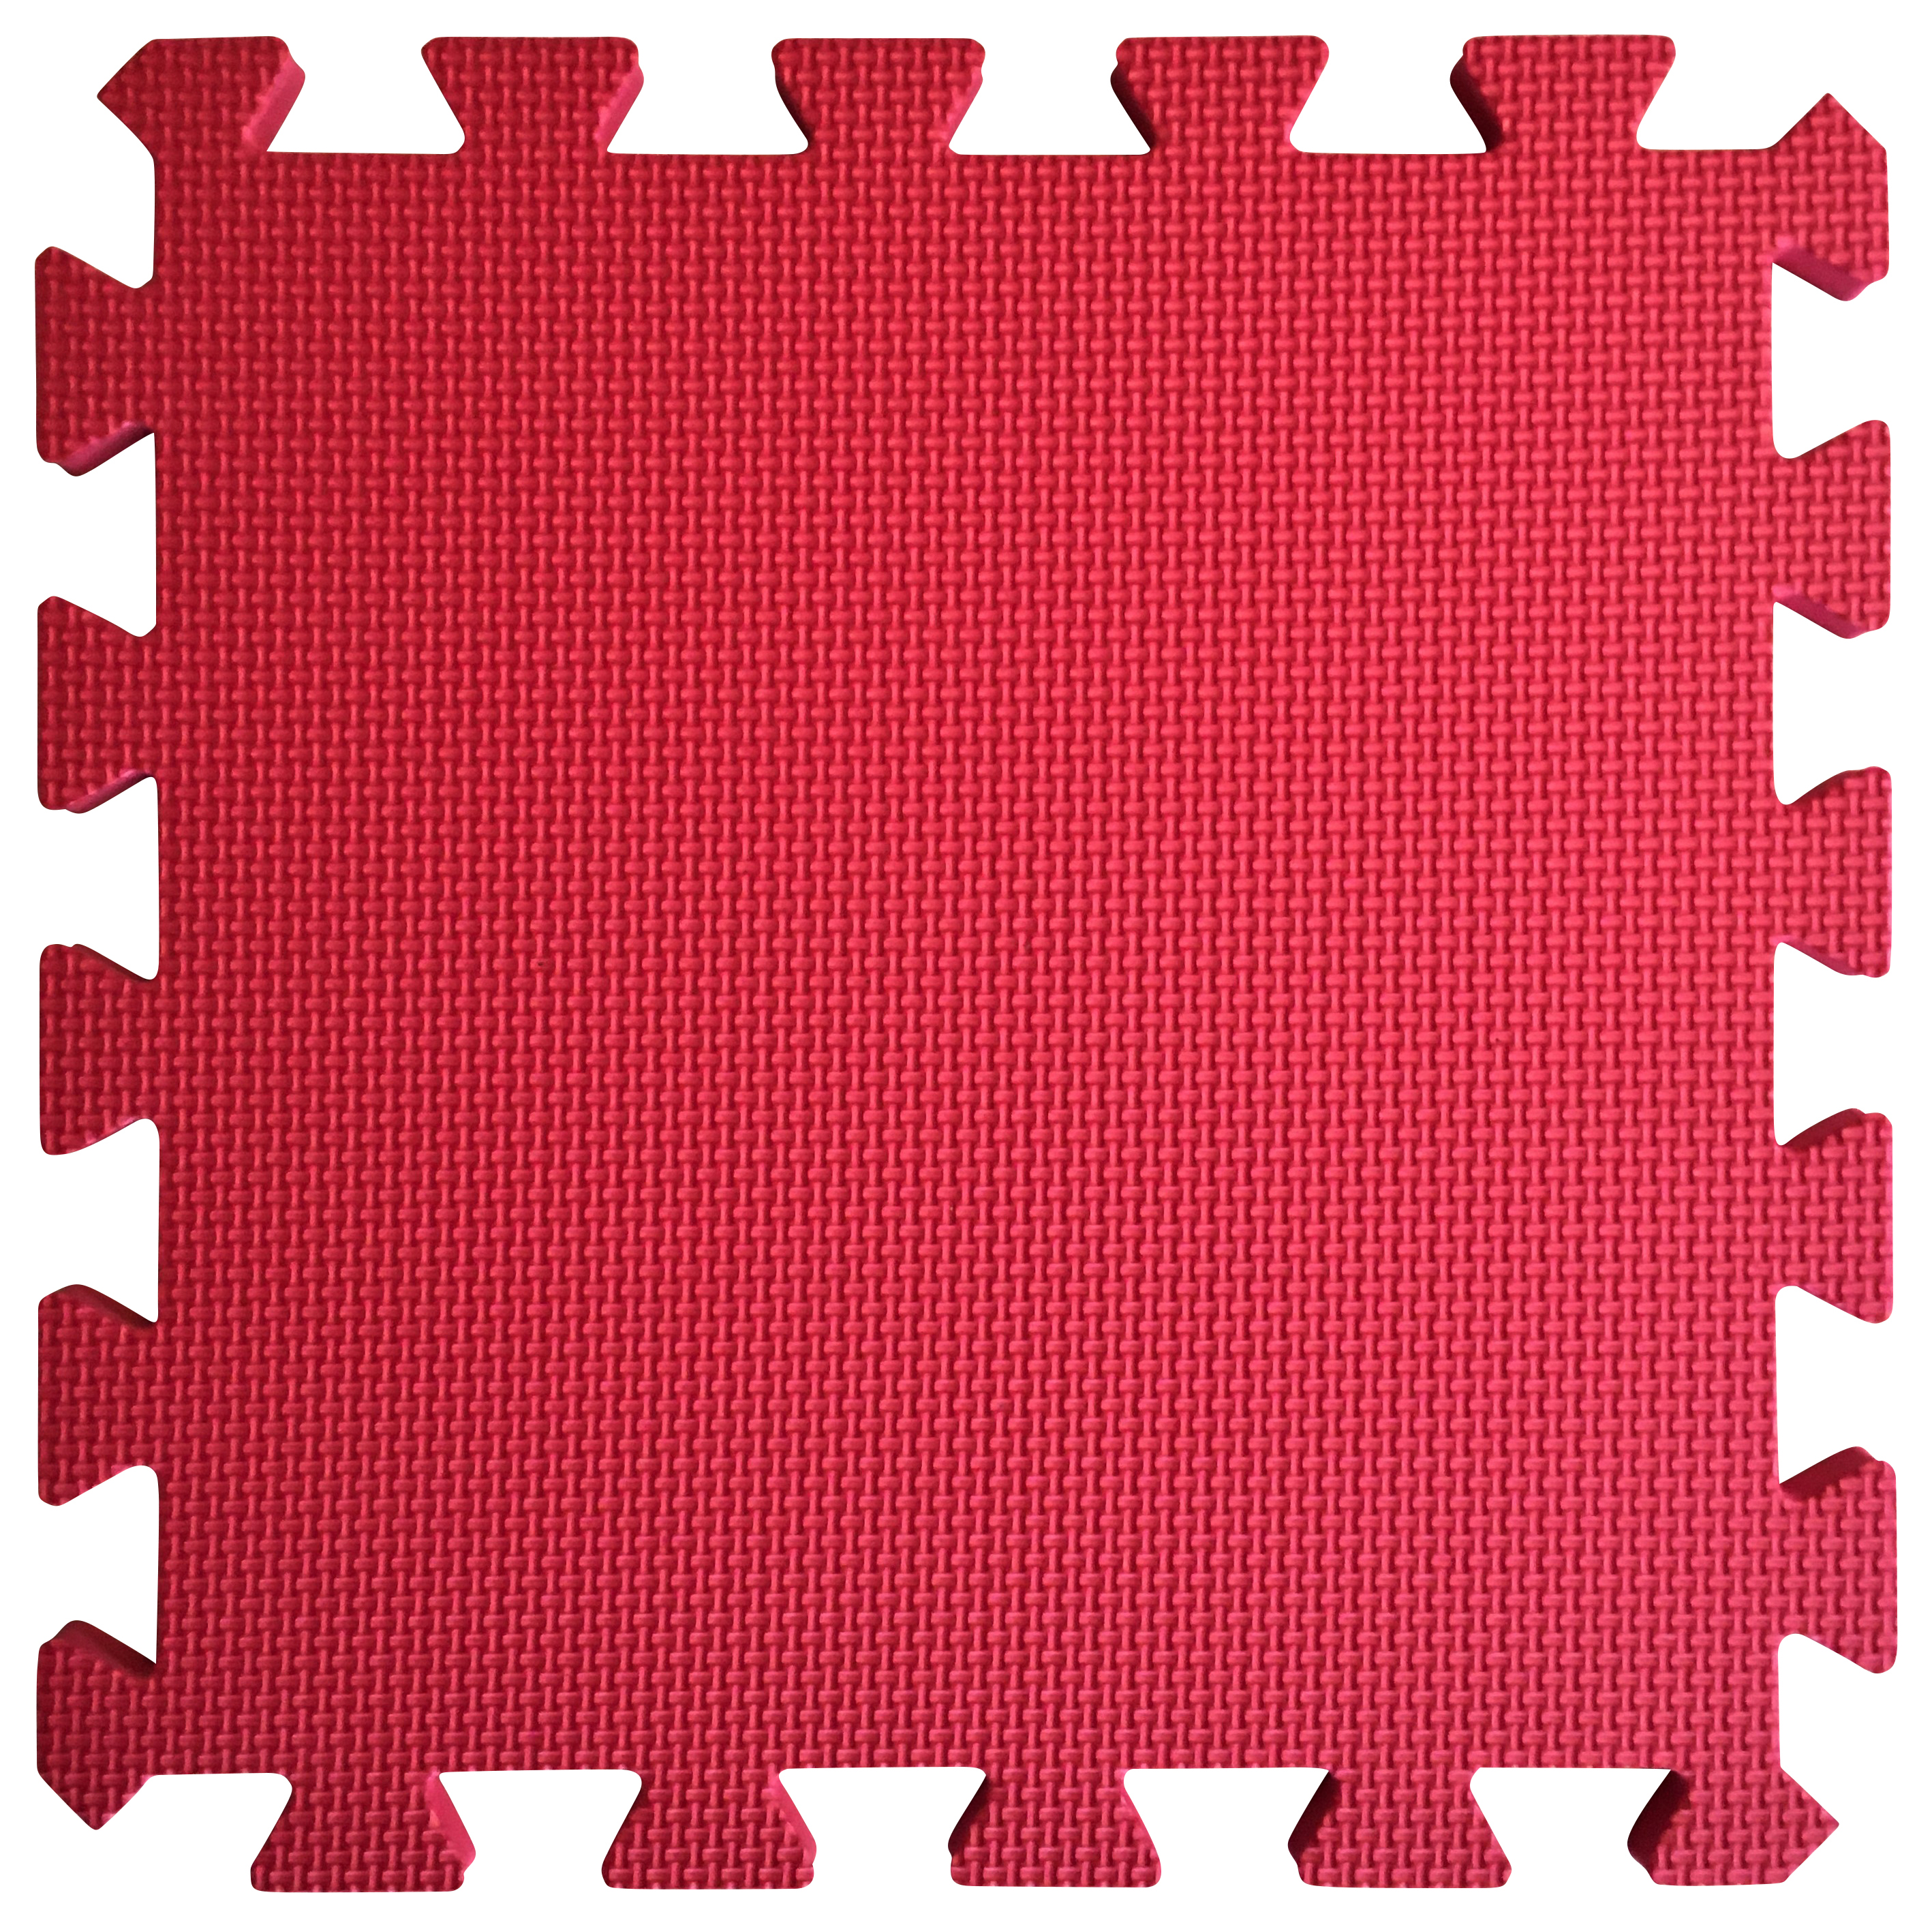 Warm Floor Red Interlocking Floor Tiles for Garden Buildings - 8 x 8ft